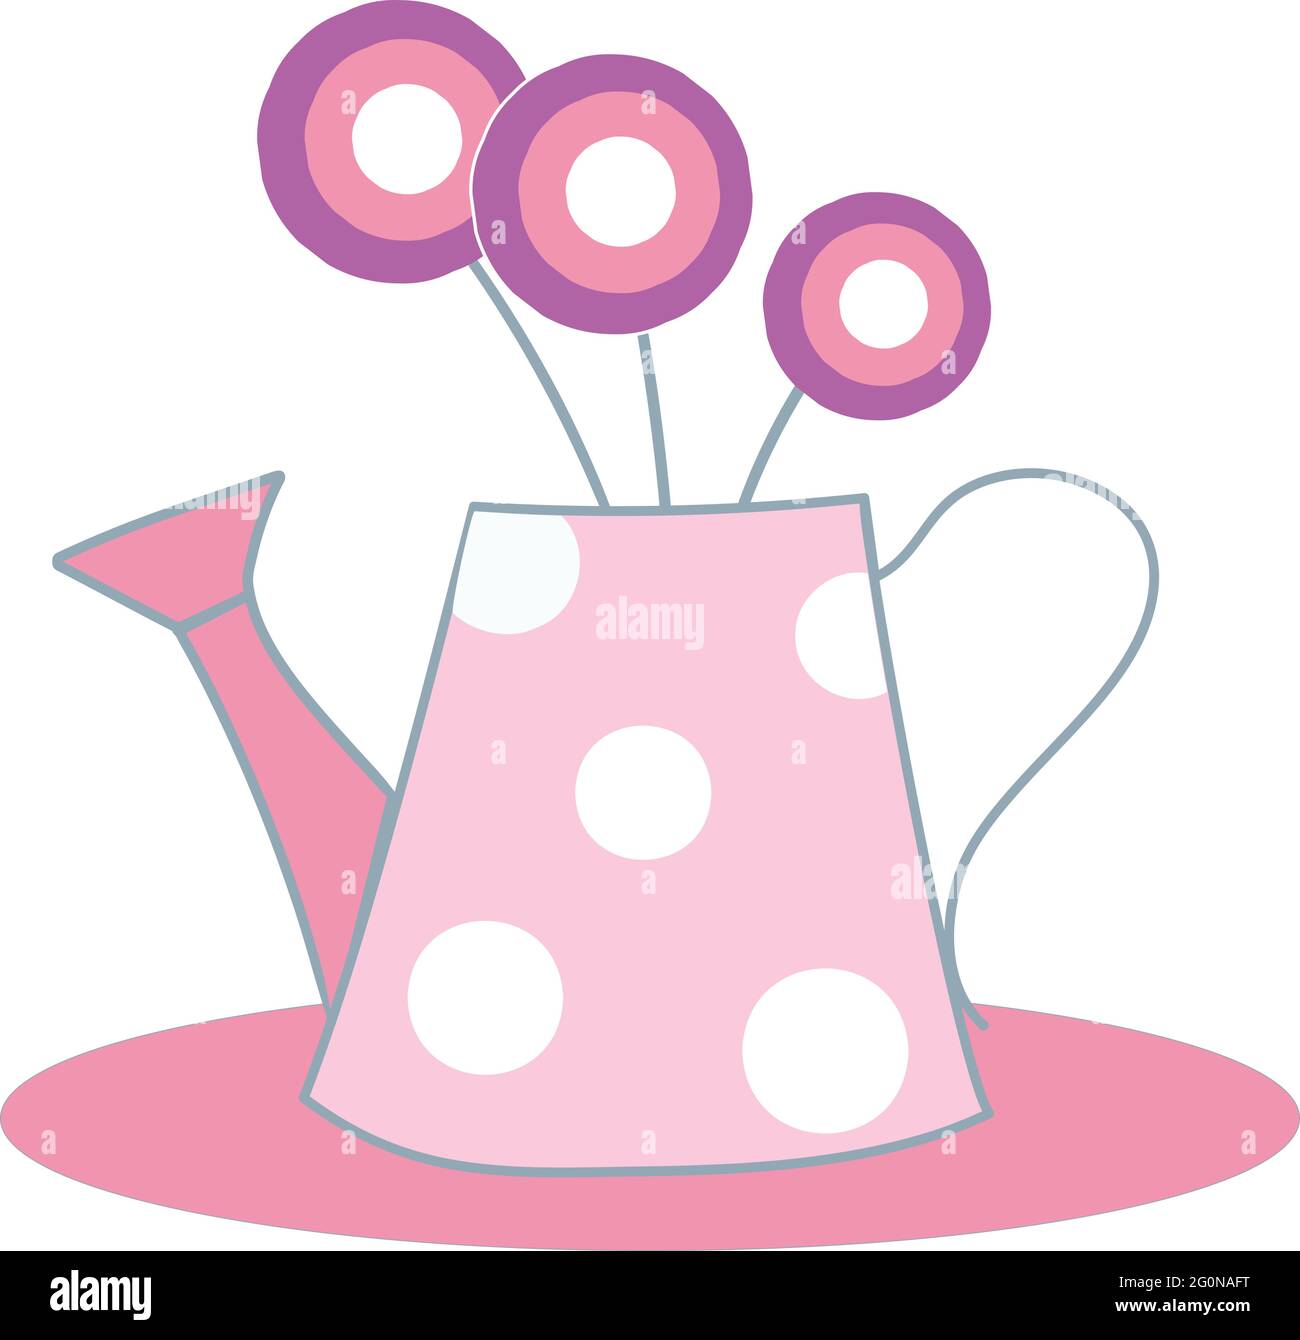 Un vase rose sous la forme d'une arrosoir rétro avec des fleurs rondes dessinées sur fond blanc Illustration de Vecteur